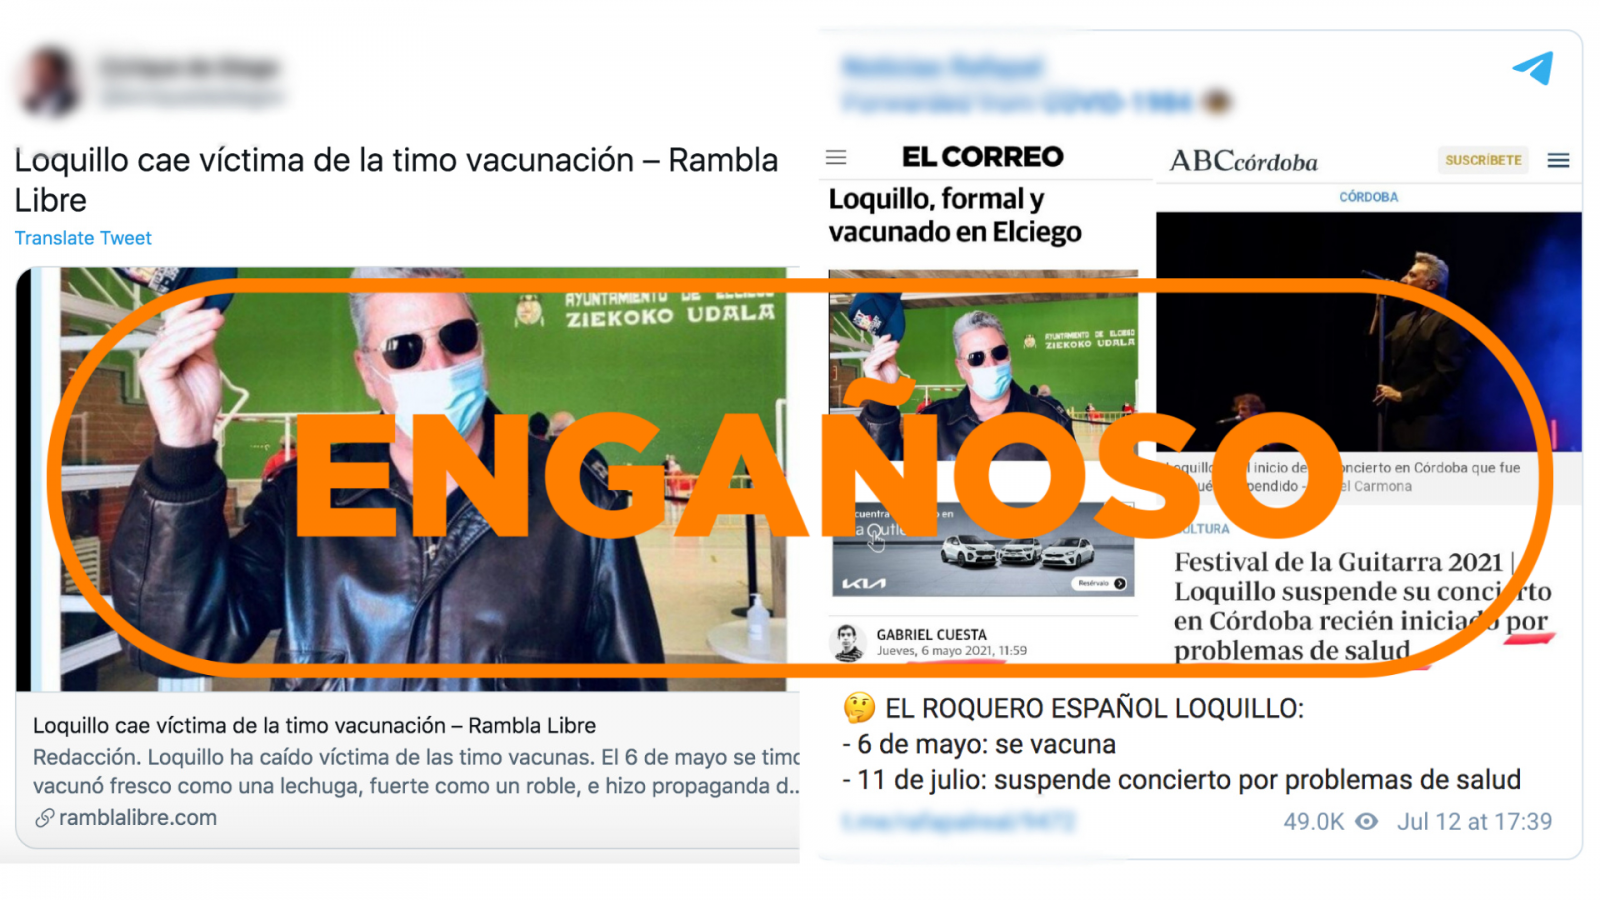 Imagen de mensajes engañosos que vinculan la suspensión del concierto de Loquillo con su vacunación con el sello engañoso en color naranja de VerificaRTVE